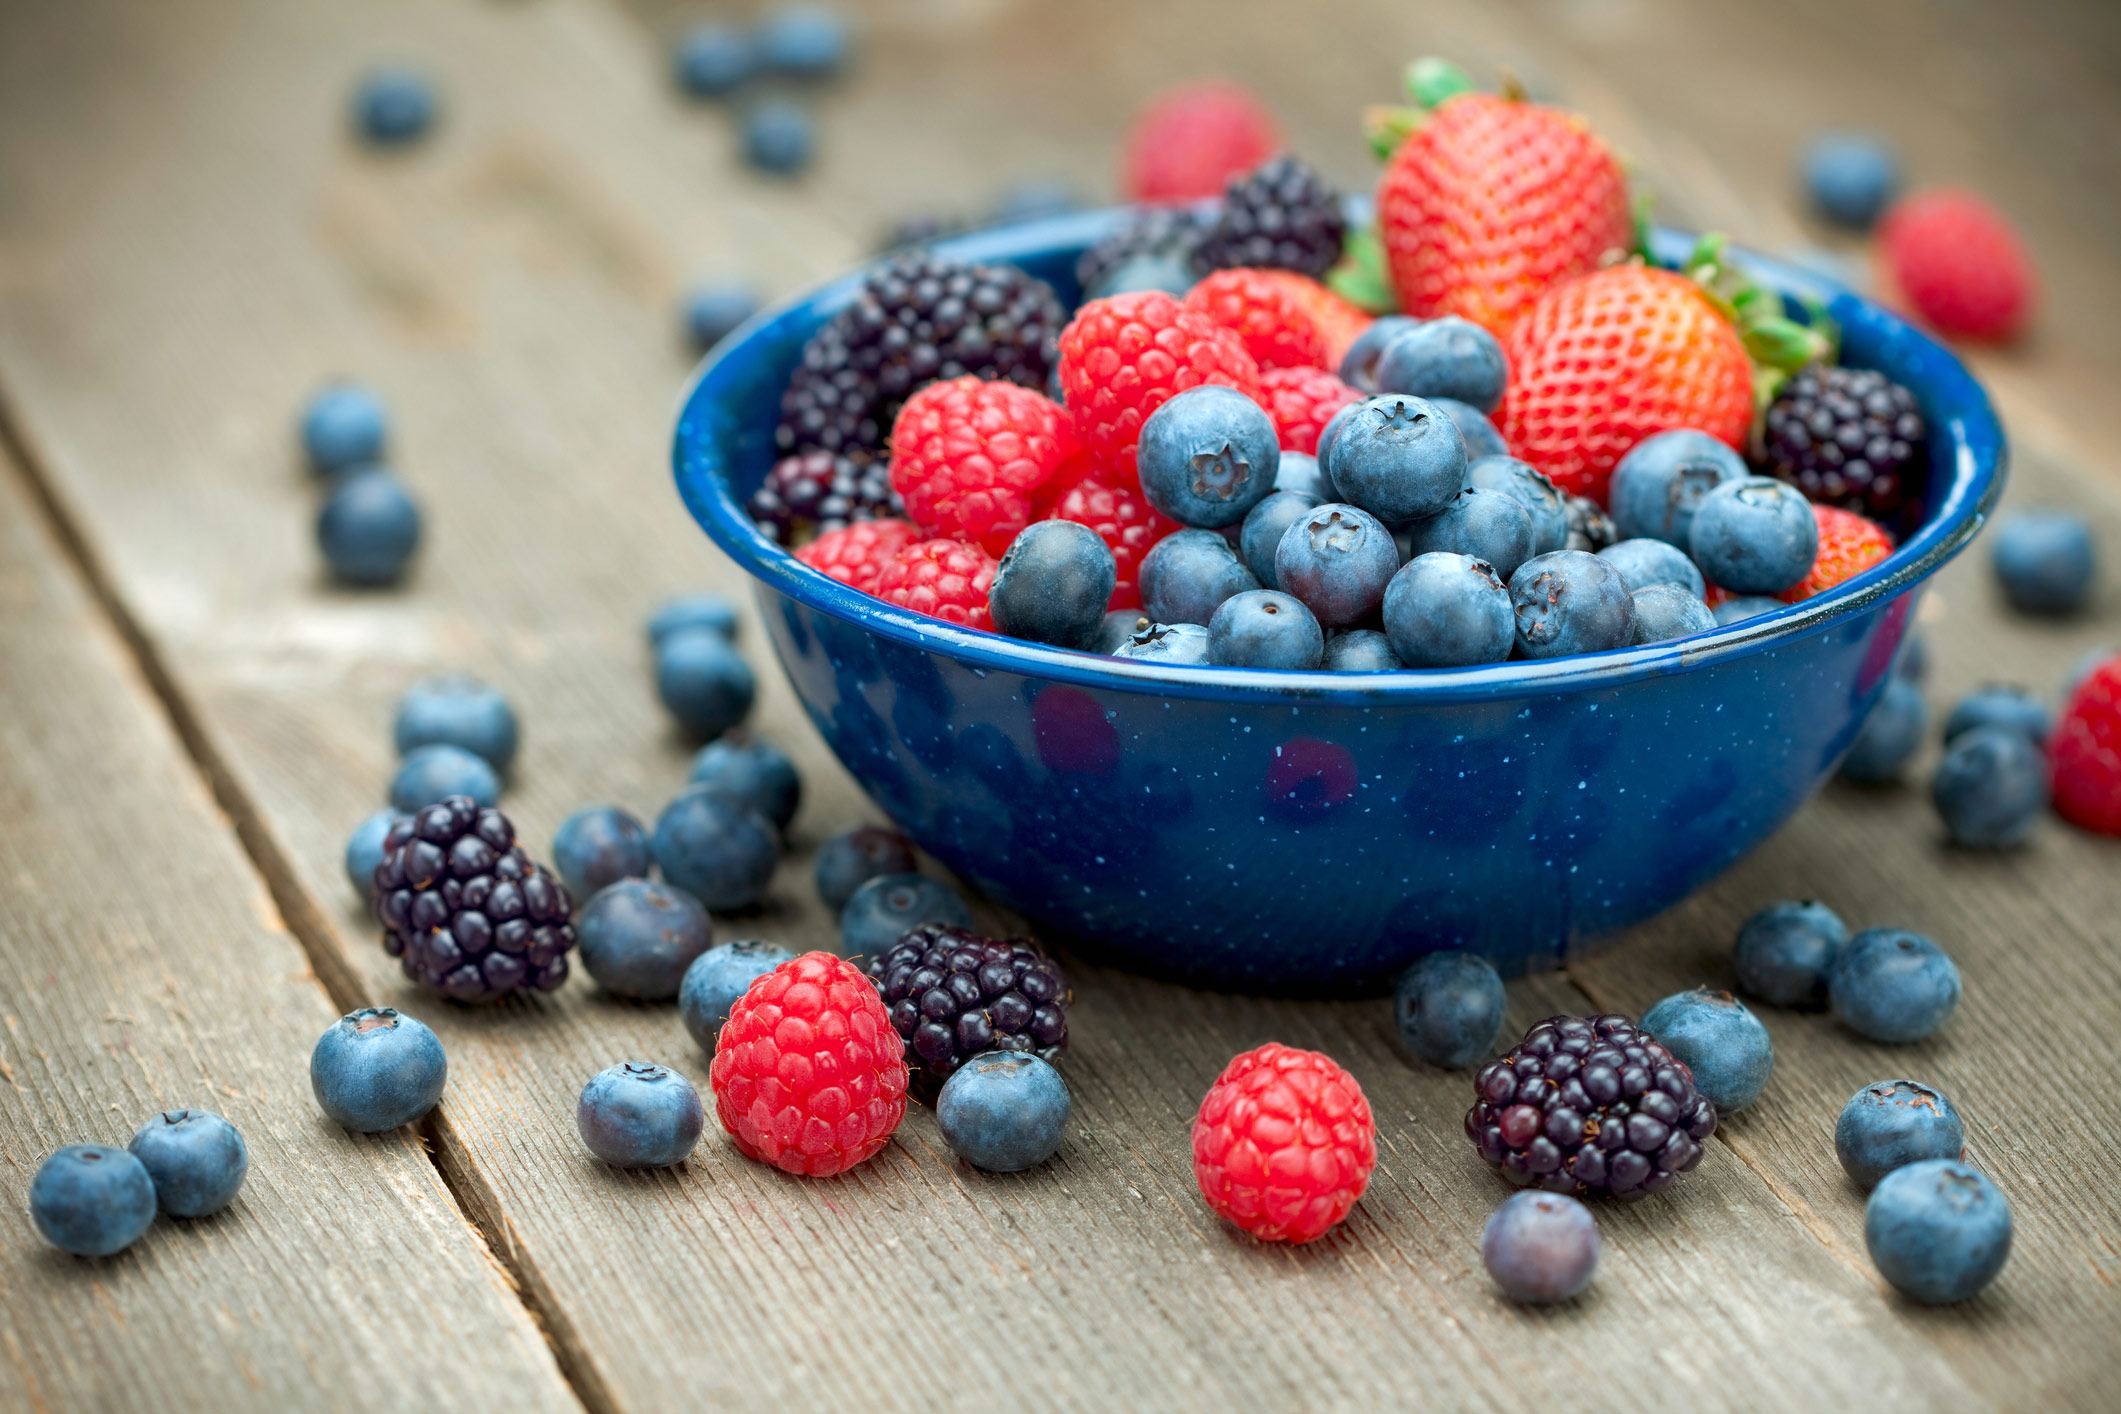 Top heart healthy foods: berries